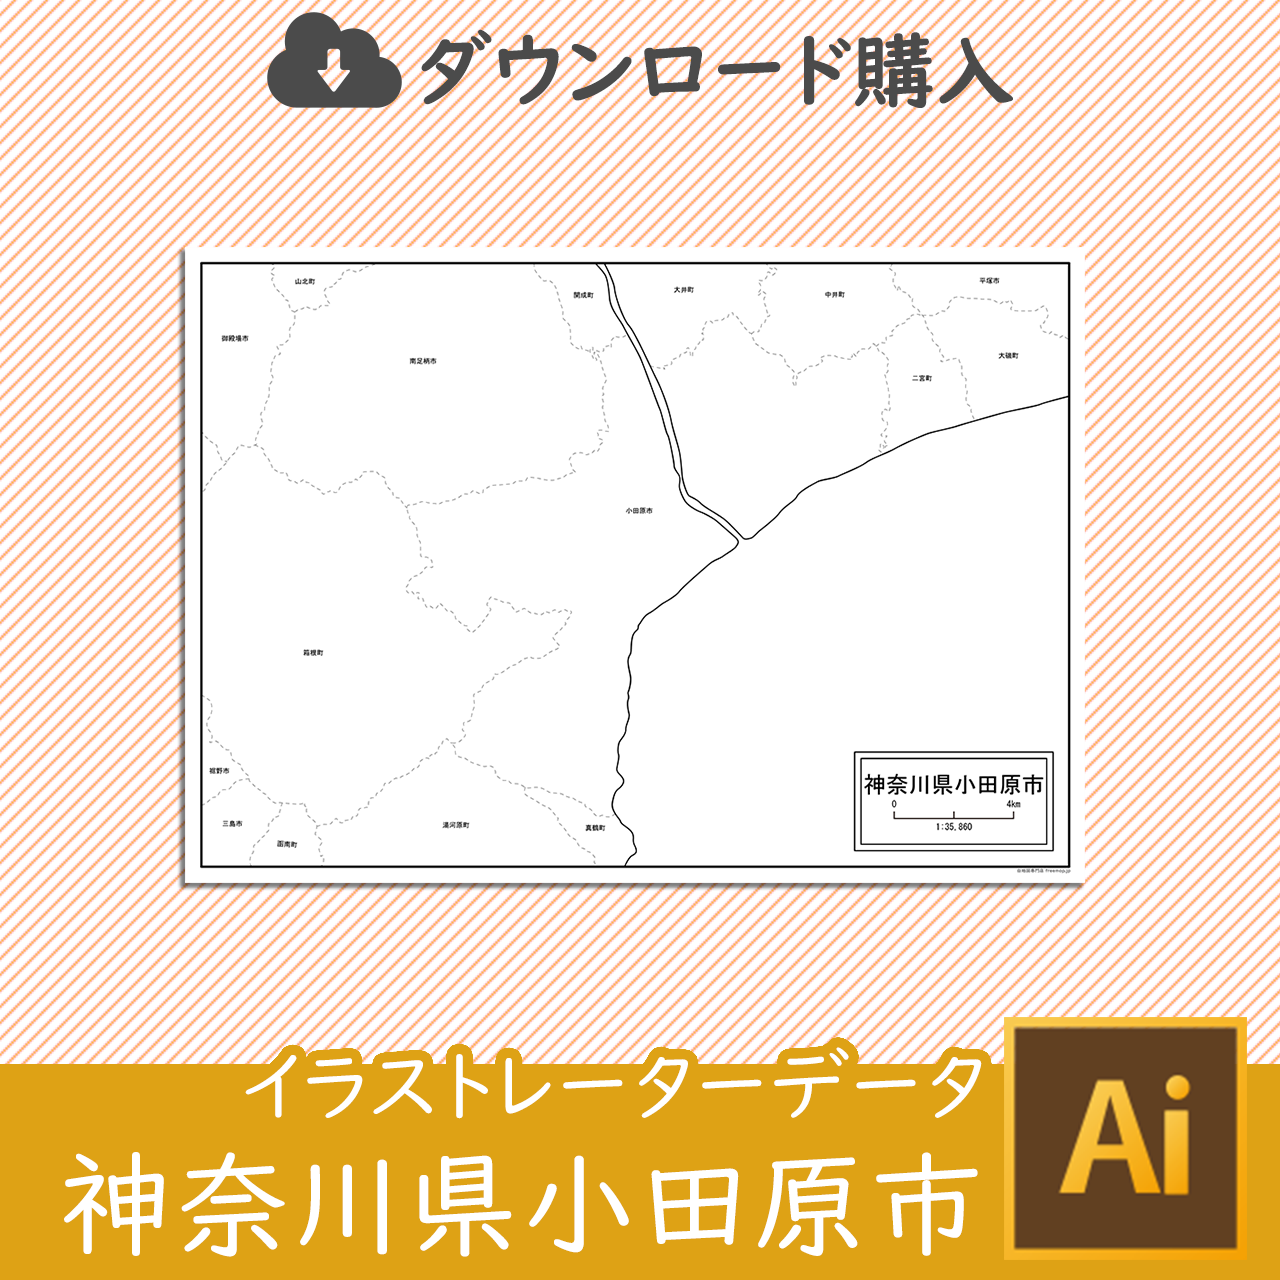 小田原市のaiデータのサムネイル画像